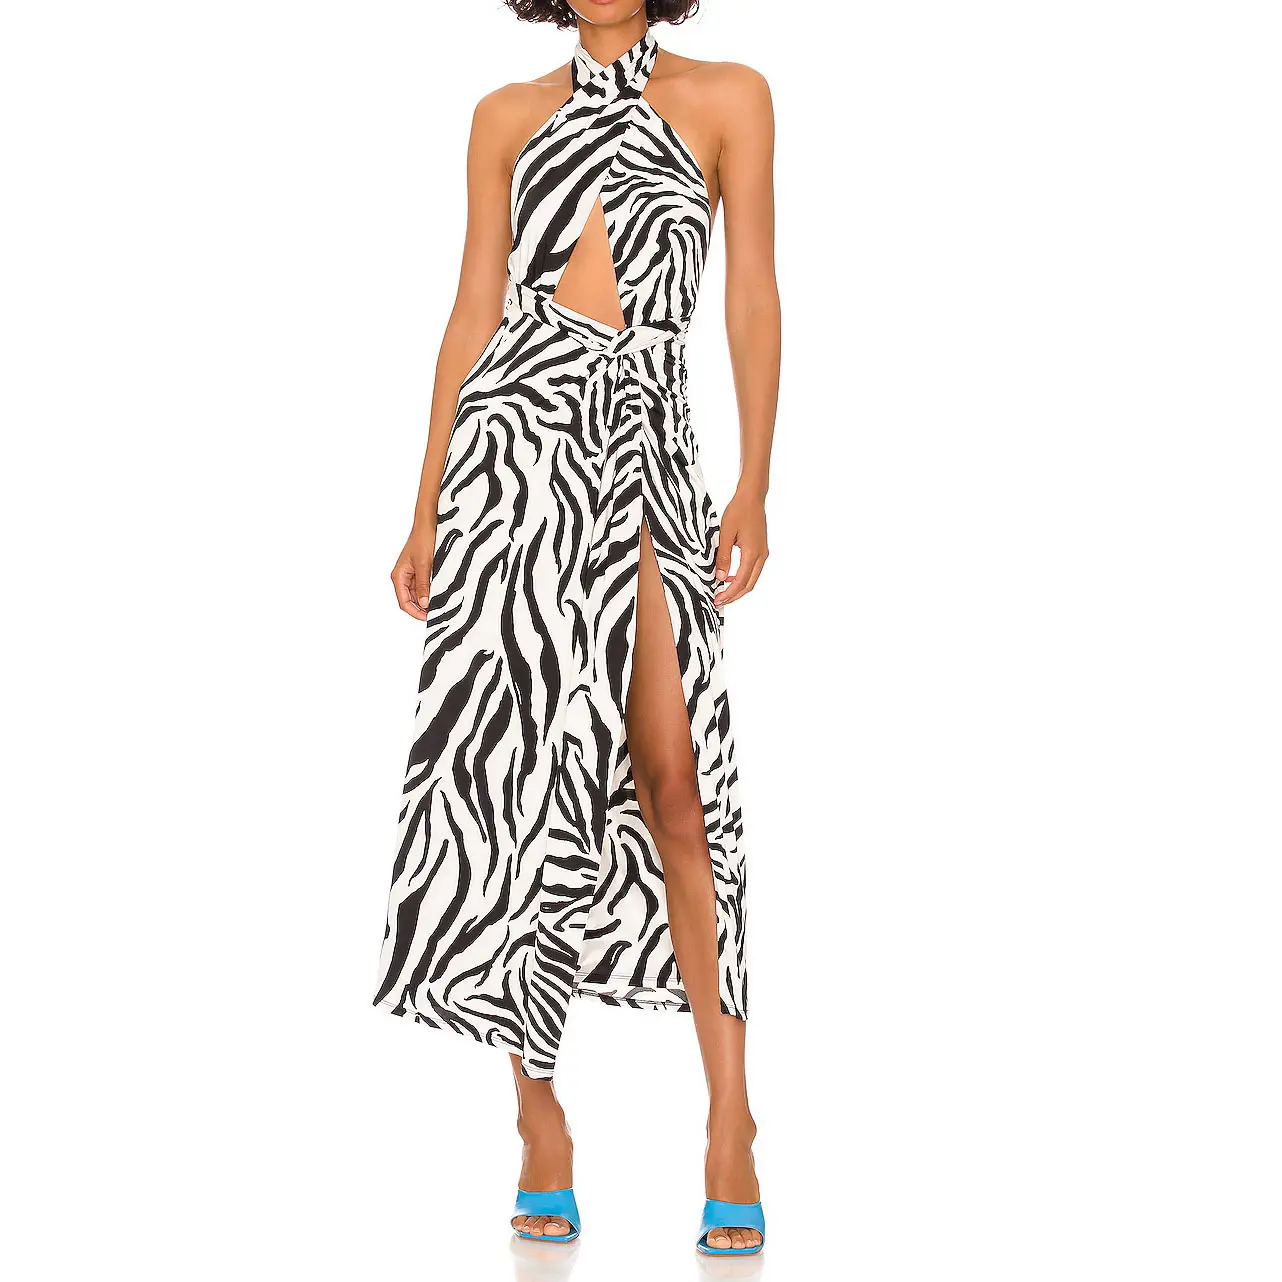 Kunden spezifisches Tier muster Kreuz riemen Zebra muster aushöhlen Design rücken freie High Split Maxi kleider